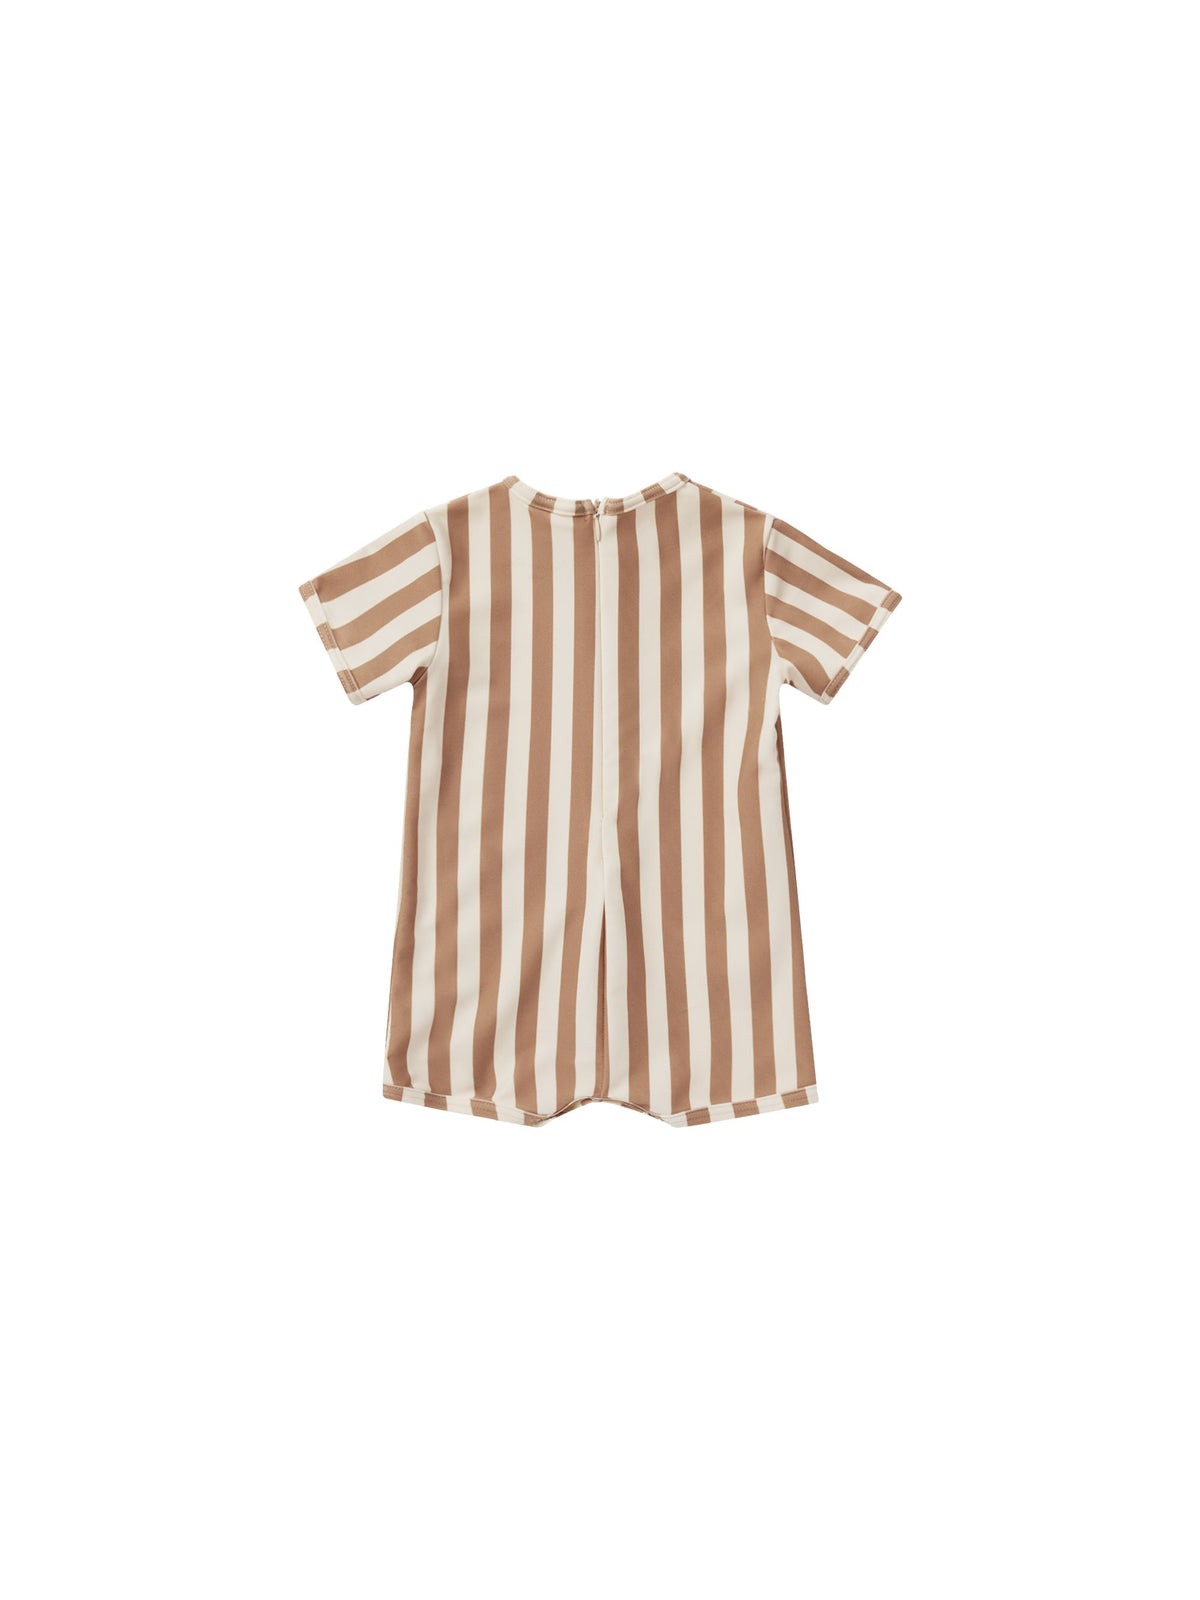 Shorty One-Piece || Clay Stripe